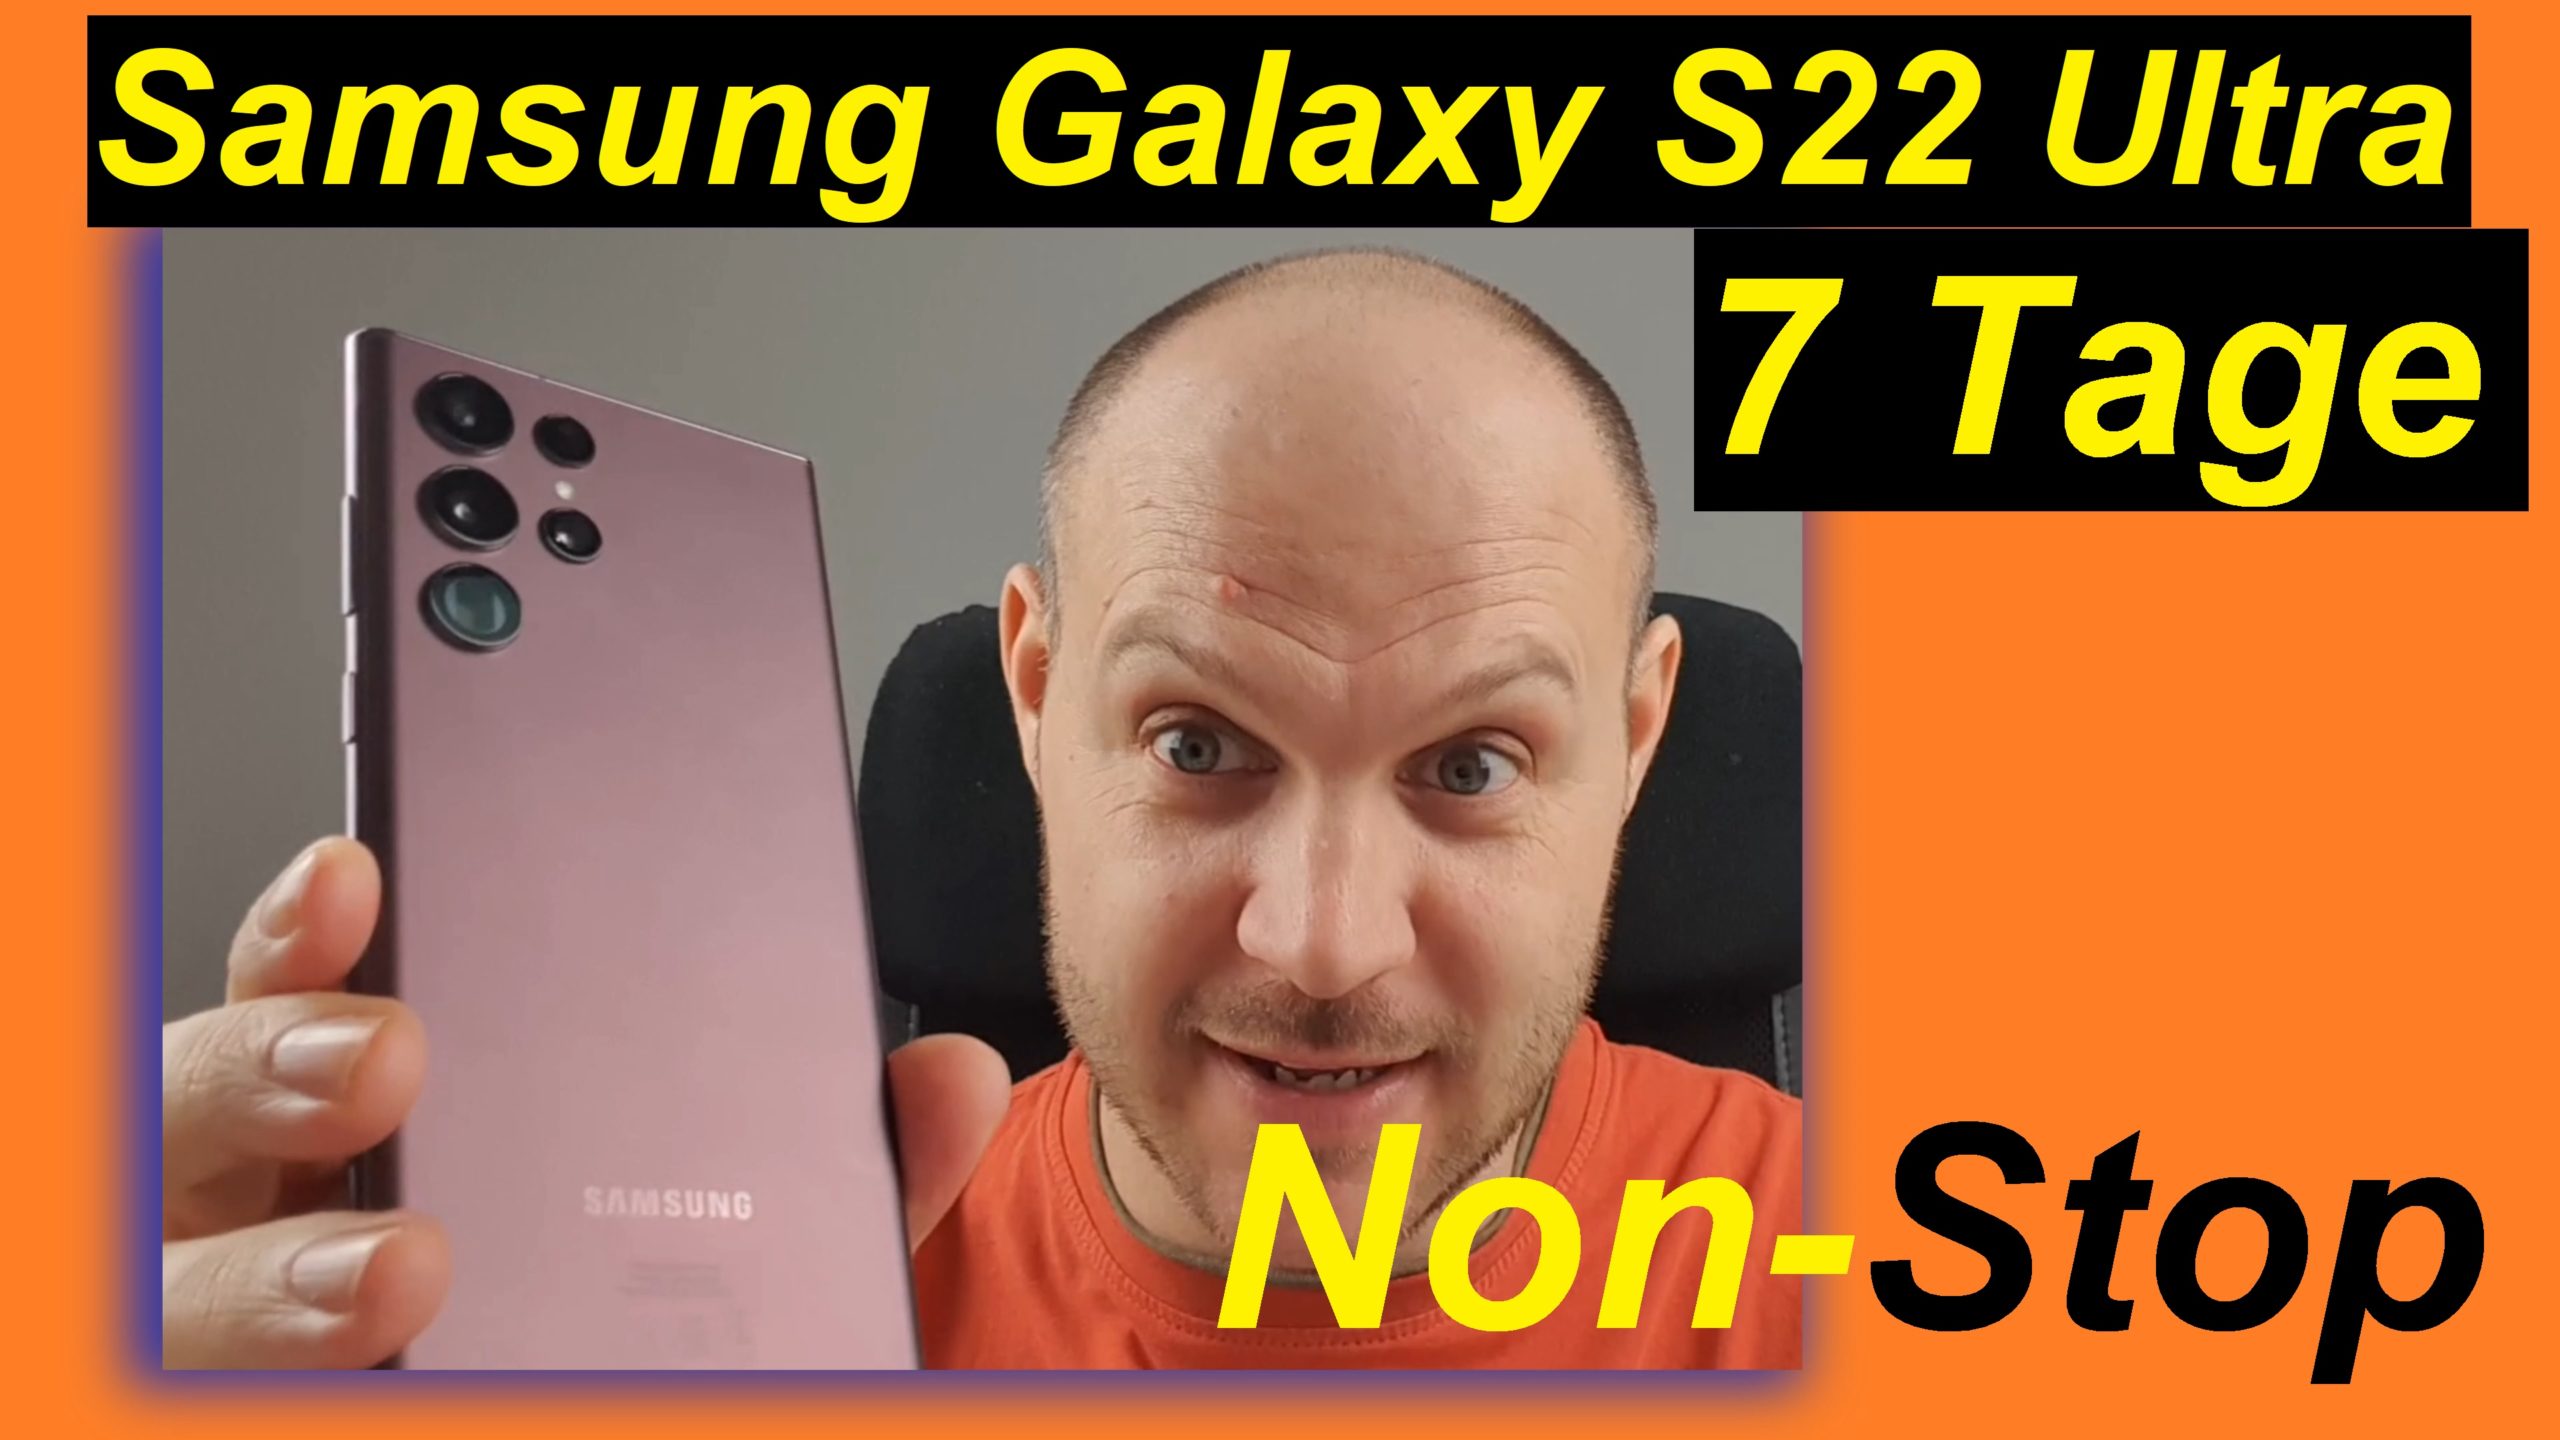 Meine bunten Erfahrungen mit dem Samsung Galaxy S22 Ultra. Bericht nach 7 Tagen.